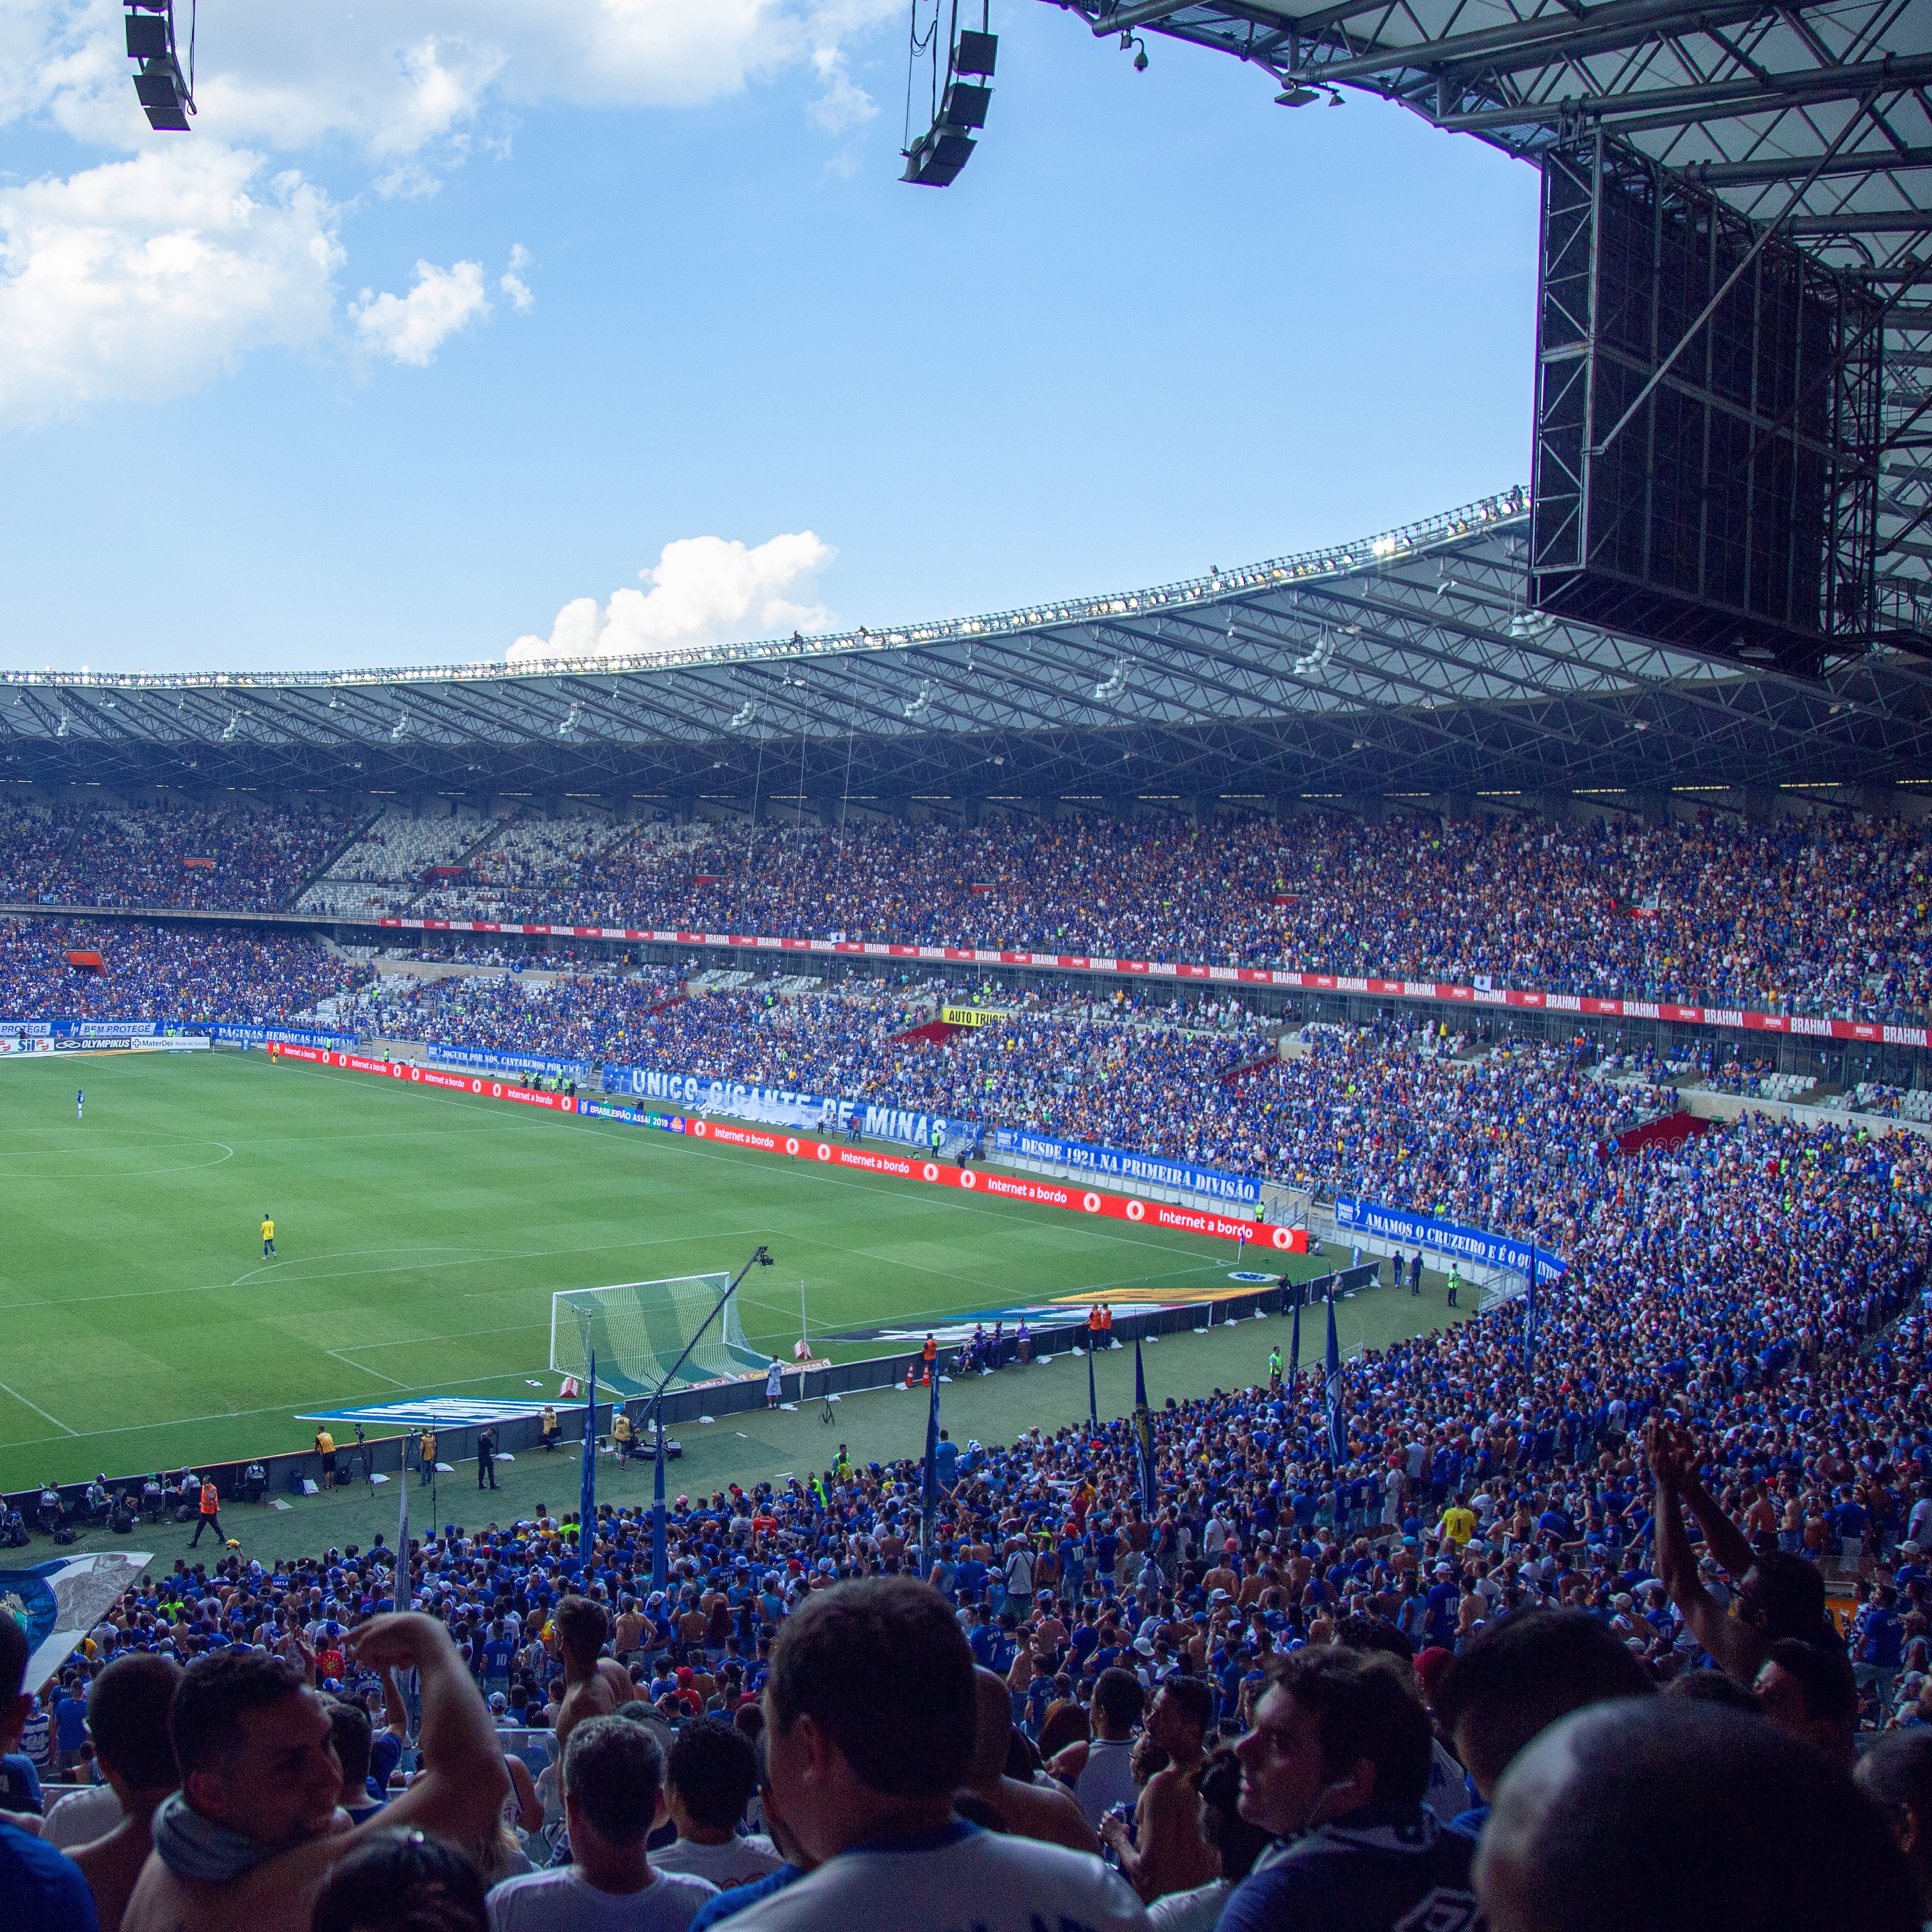 Cruzeiro Esporte Clube - Bom dia, Nação Azul! 🔵⚪🦊 #AMANHÃTEMCRUZEIRO e o  Mineirão será todo POPULAR mais uma vez! Os ingressos para a partida entre #Cruzeiro  x Vasco, continuam à venda hoje